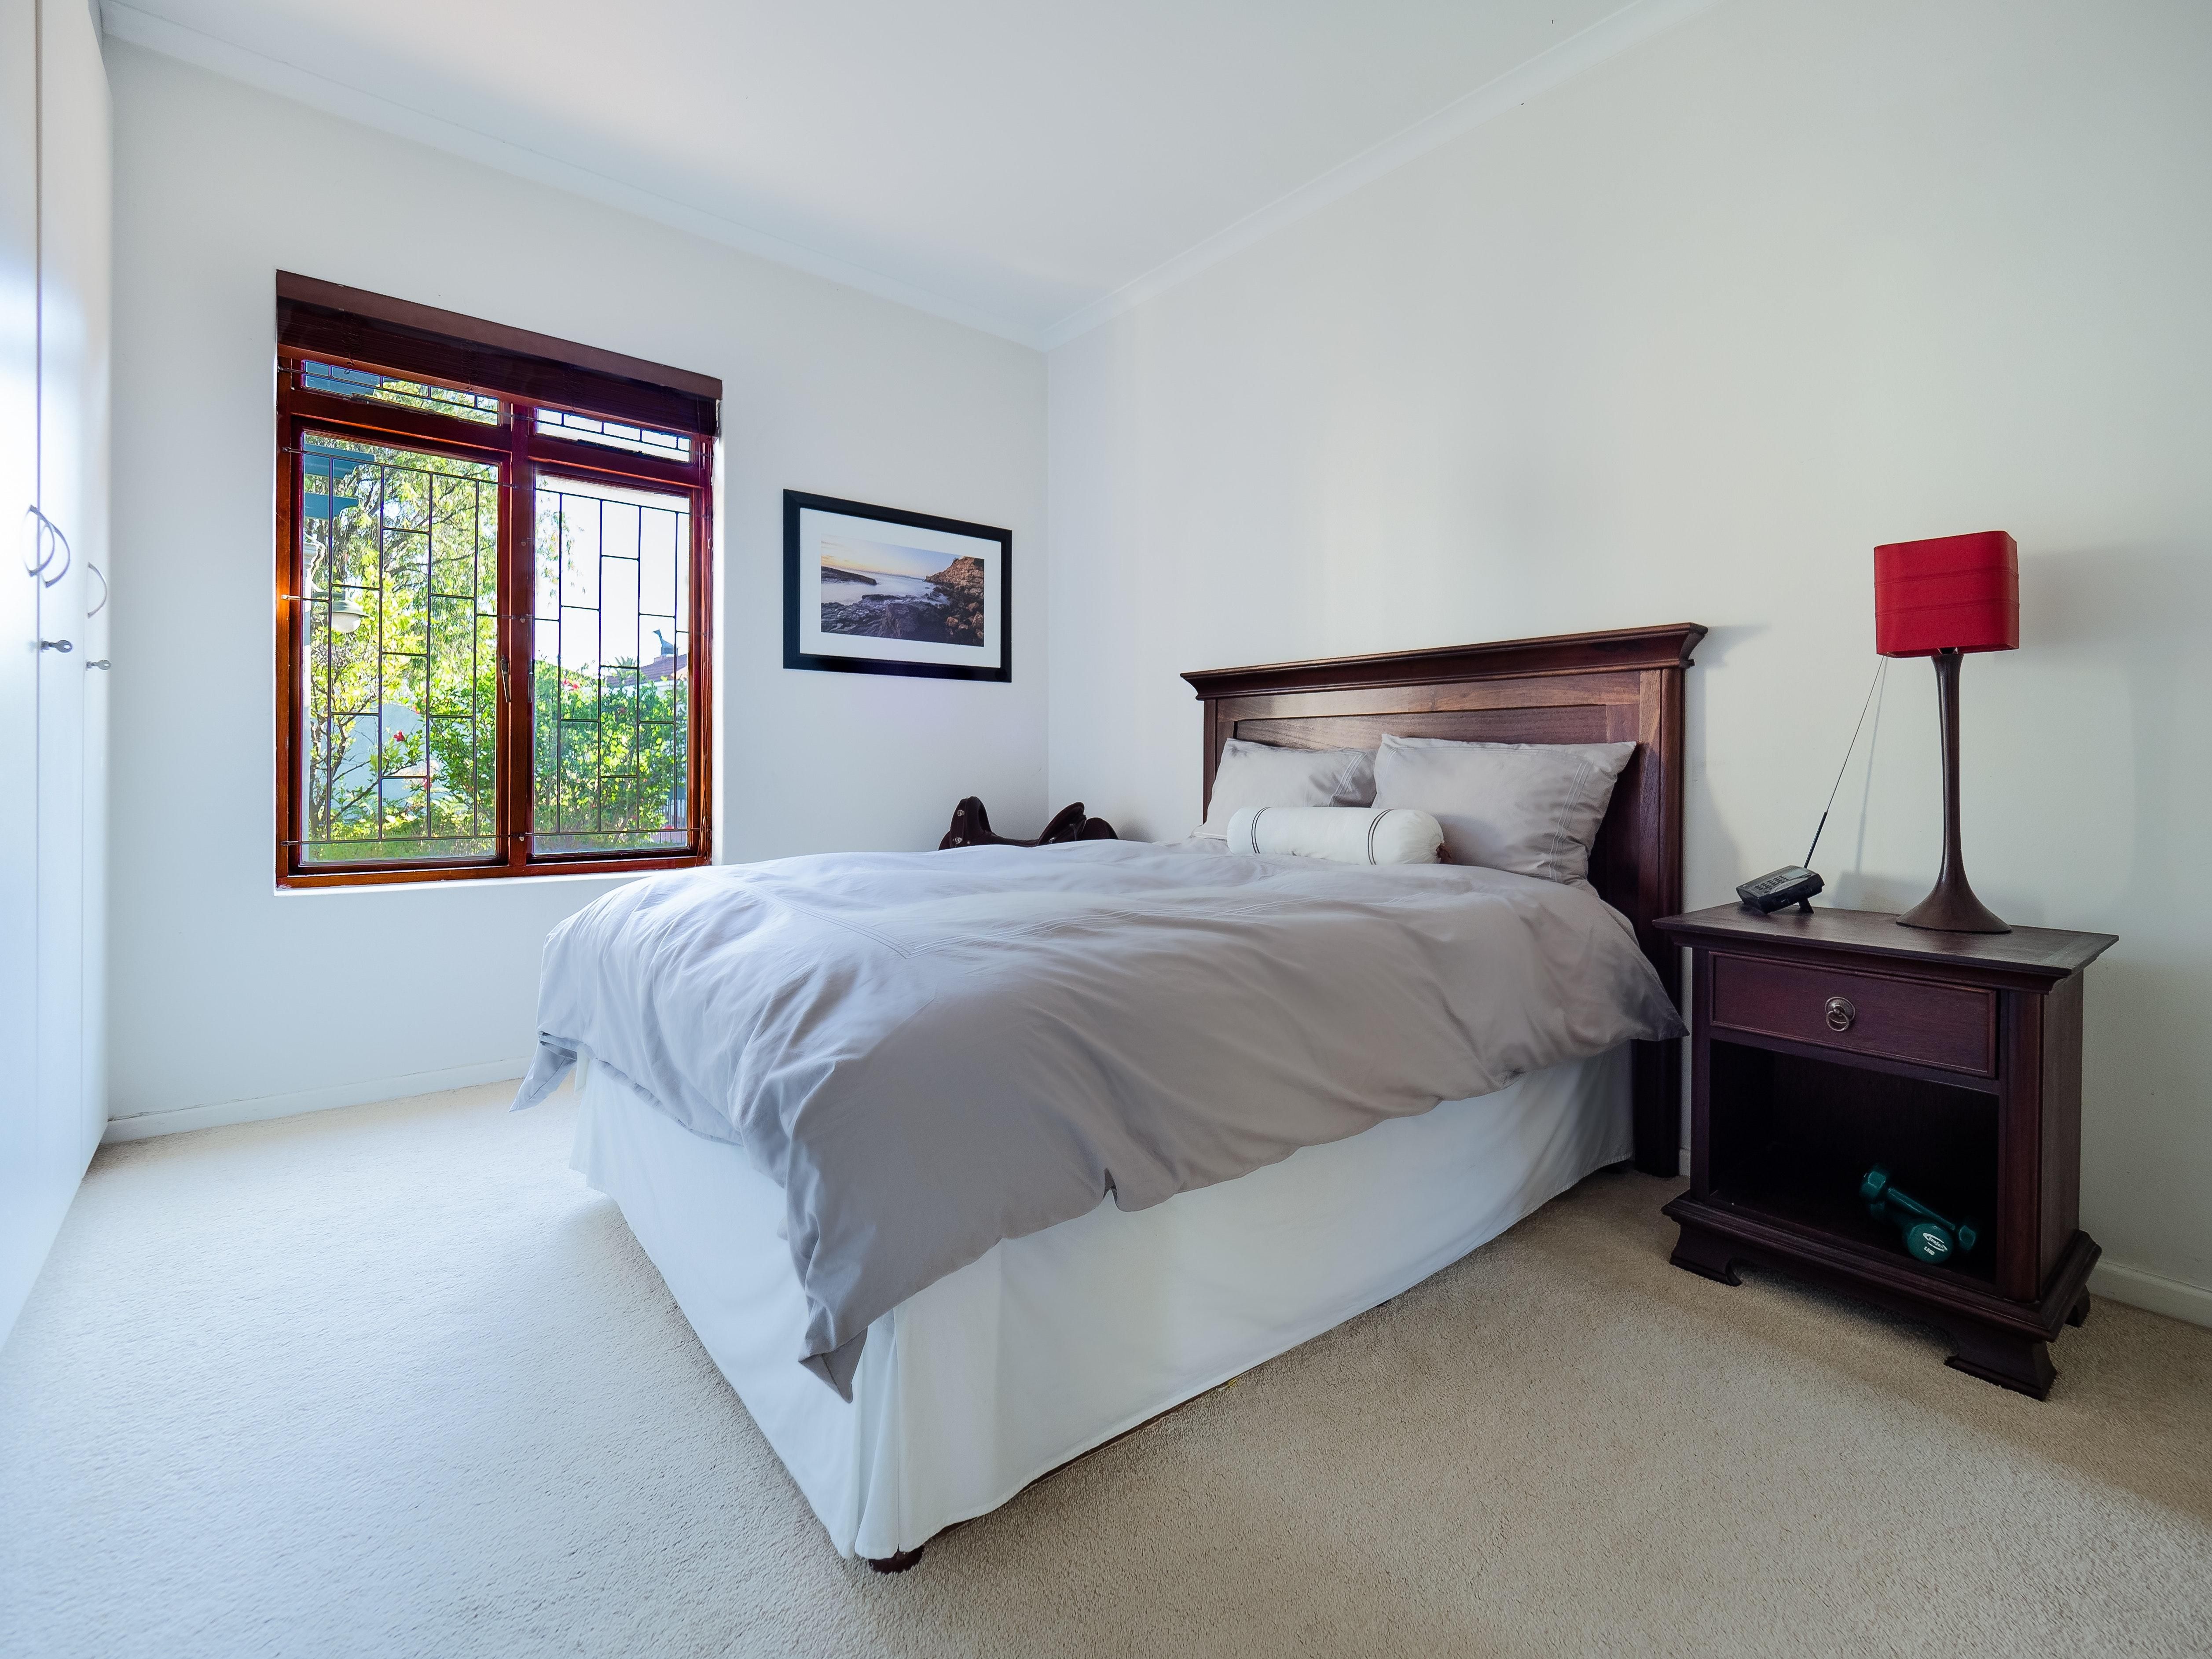 Ідеально підійде для вашого ліжка: як обрати якісну та комфортну ковдру - Дизайн 24